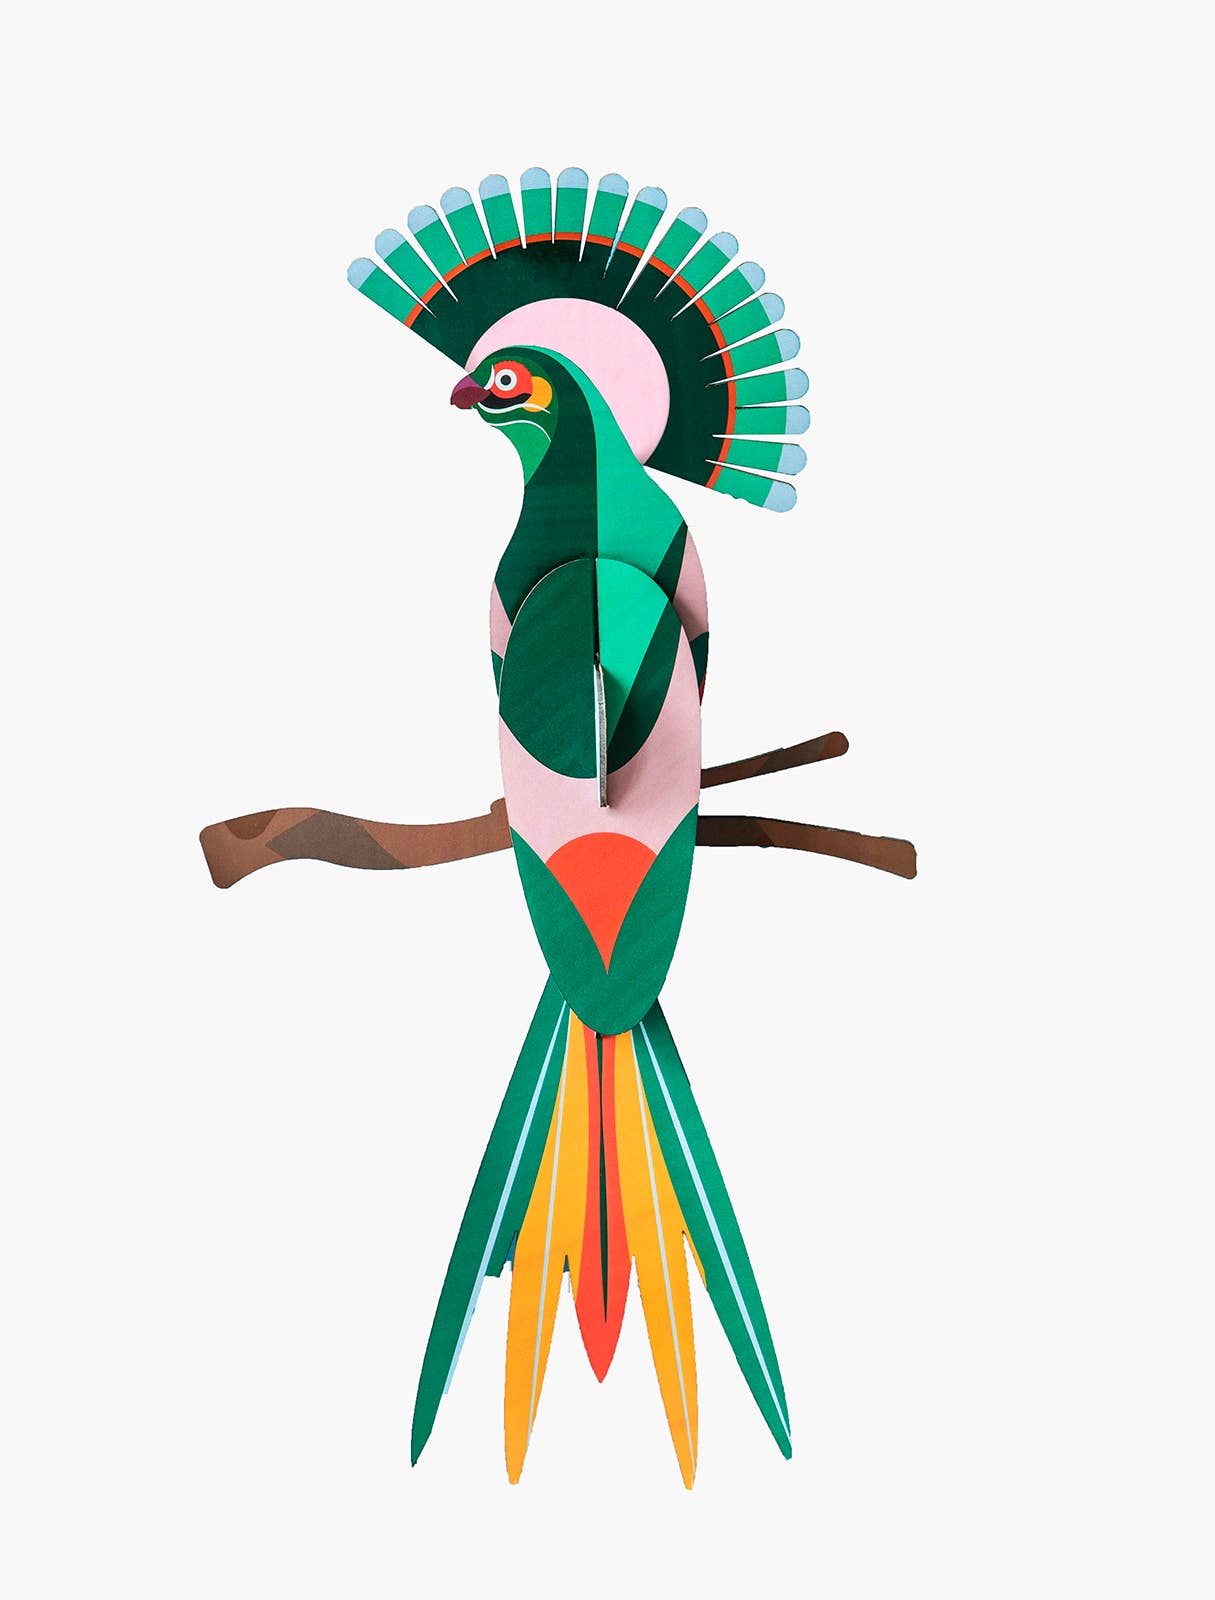 Gili Paradise Bird - 3D Paper Craft Kit